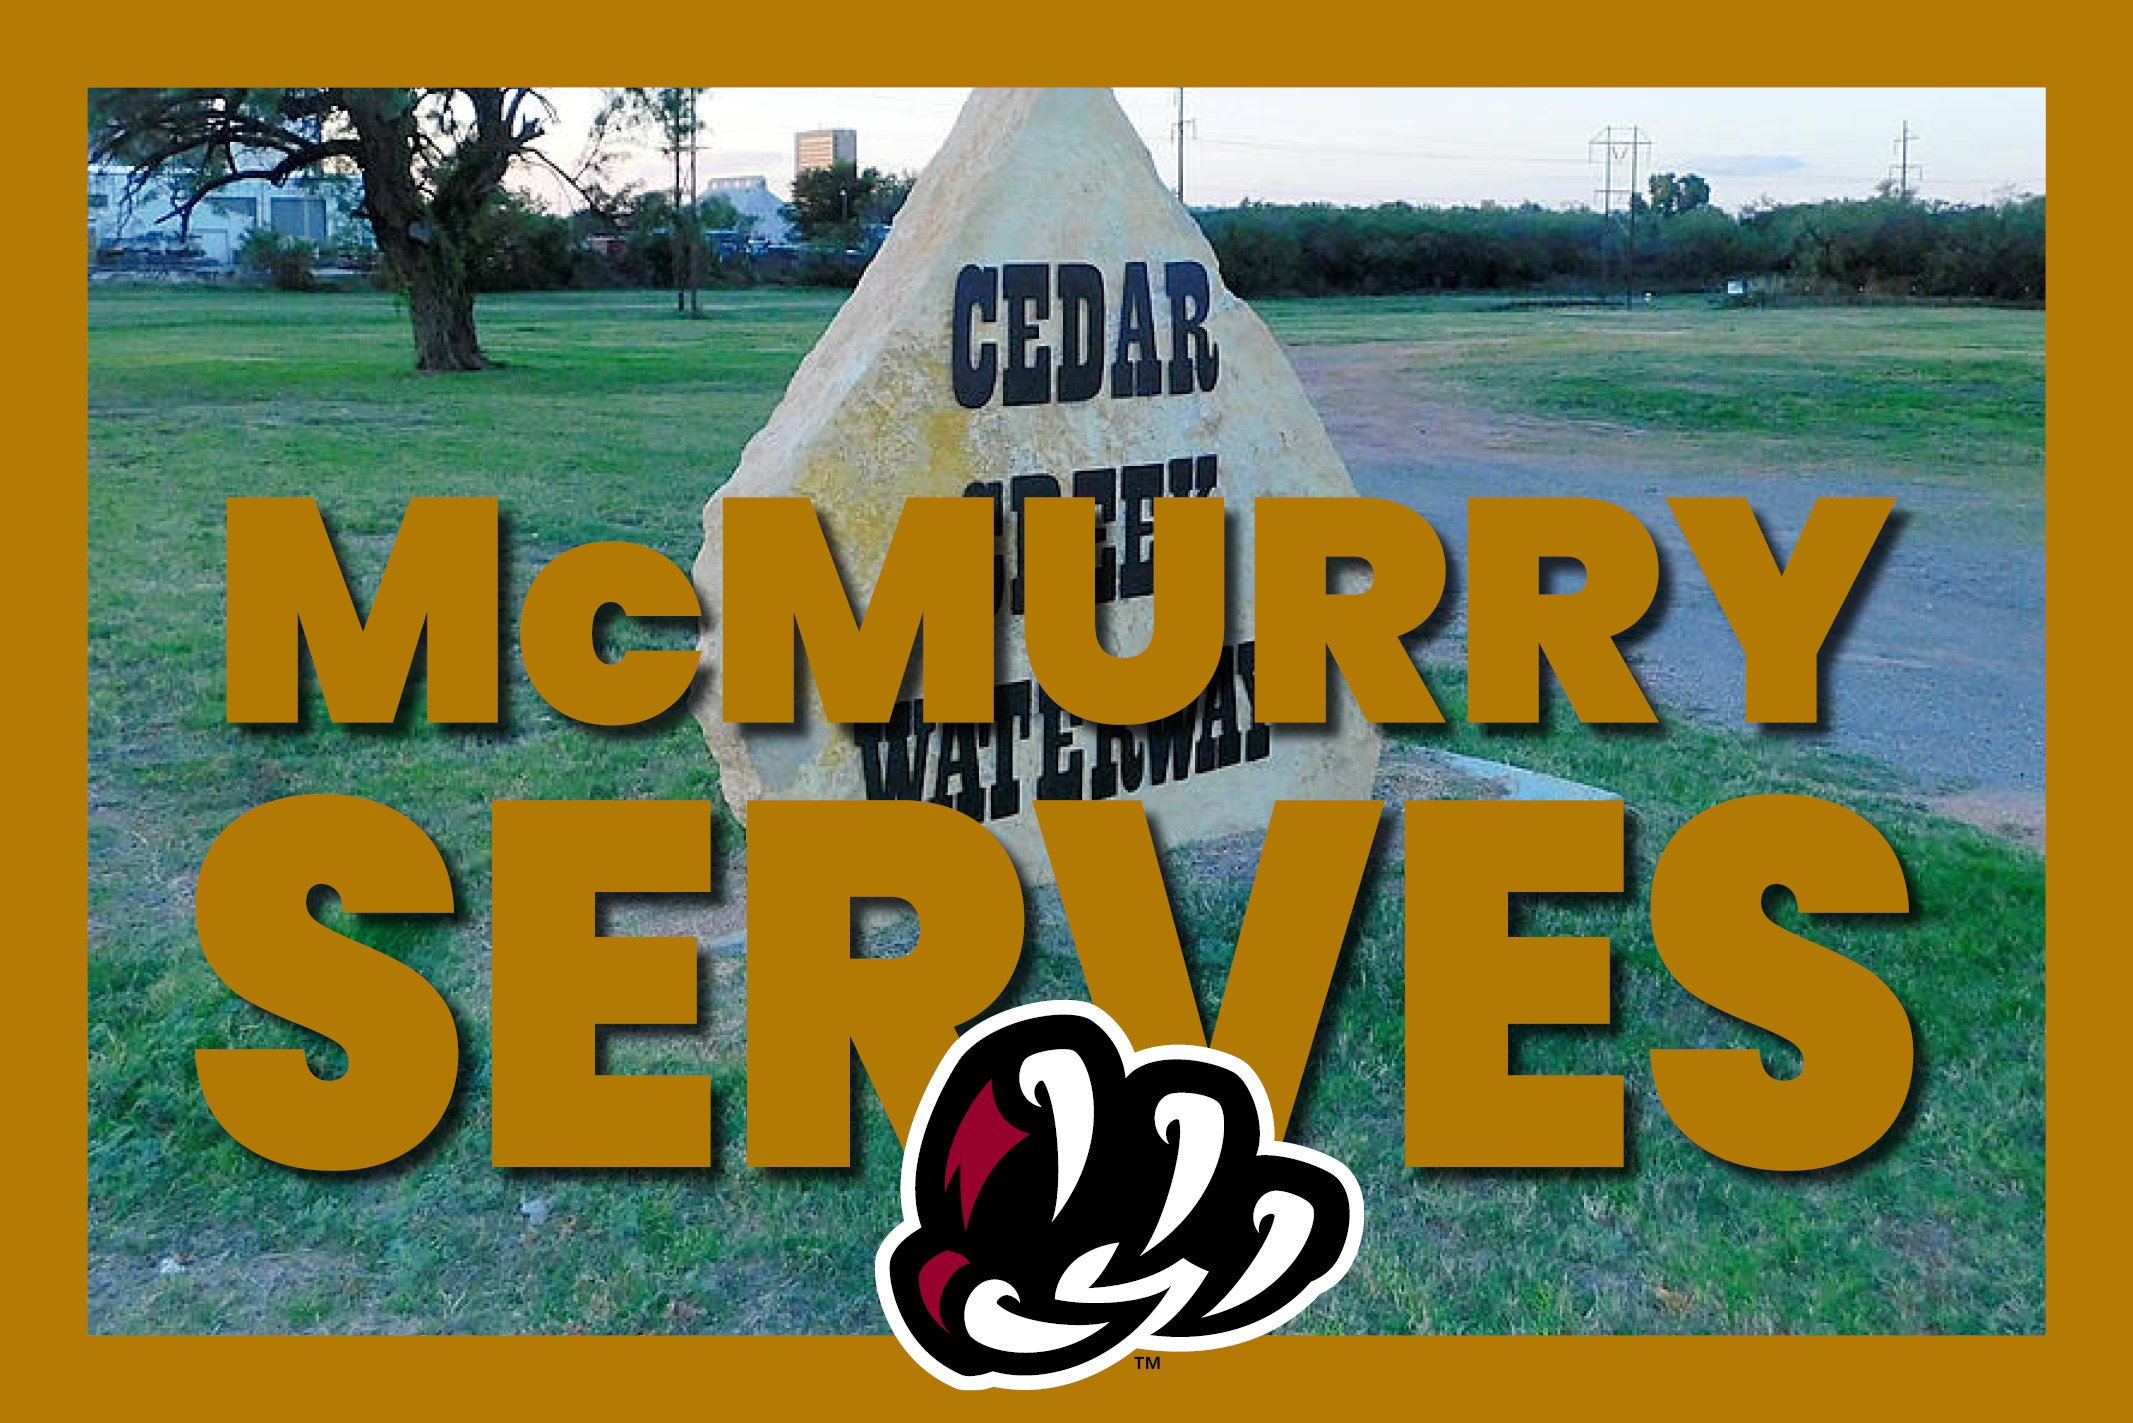 McMurry Serves Cedar Creek Waterway